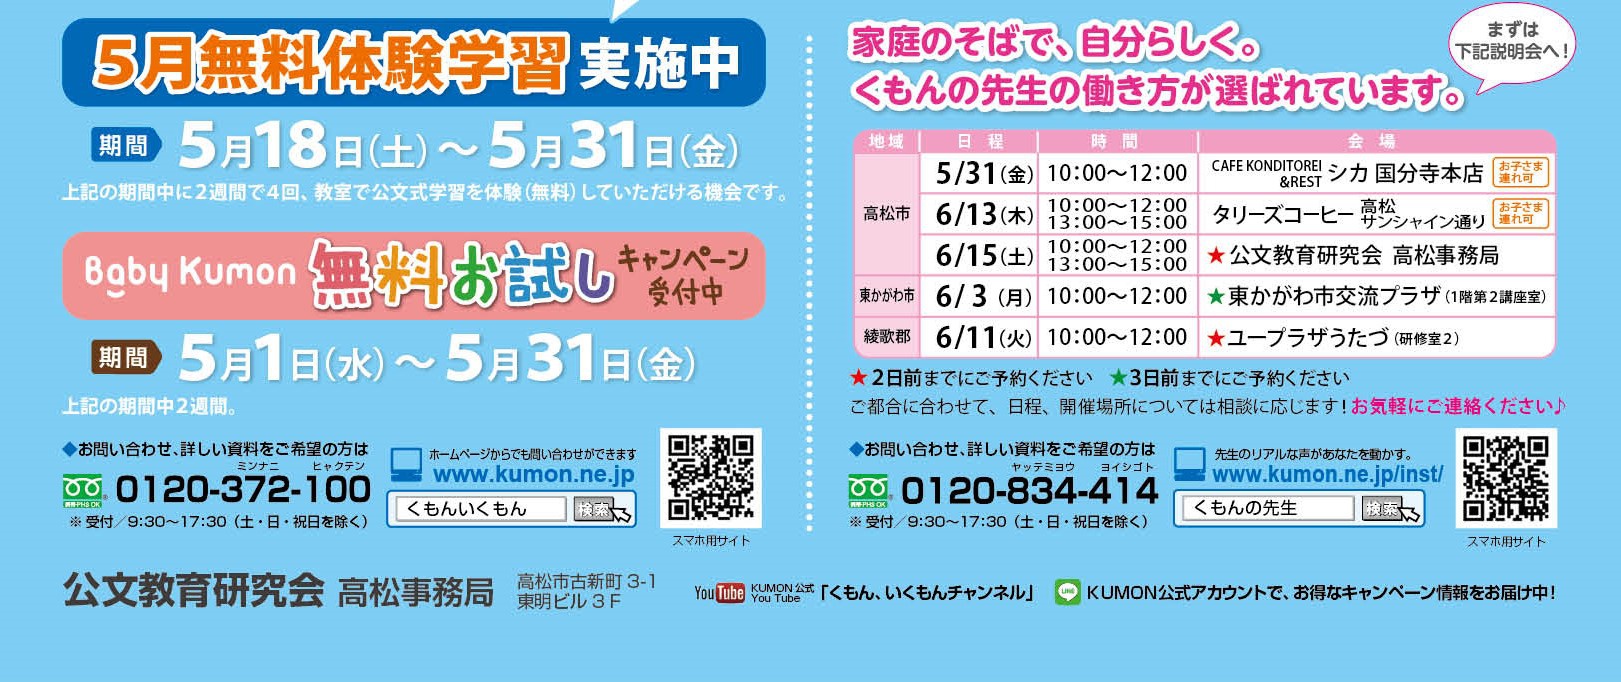 5 18 5 31 5月の無料体験学習を実施します 香川の子育て支援 改善 Npo法人わははネット